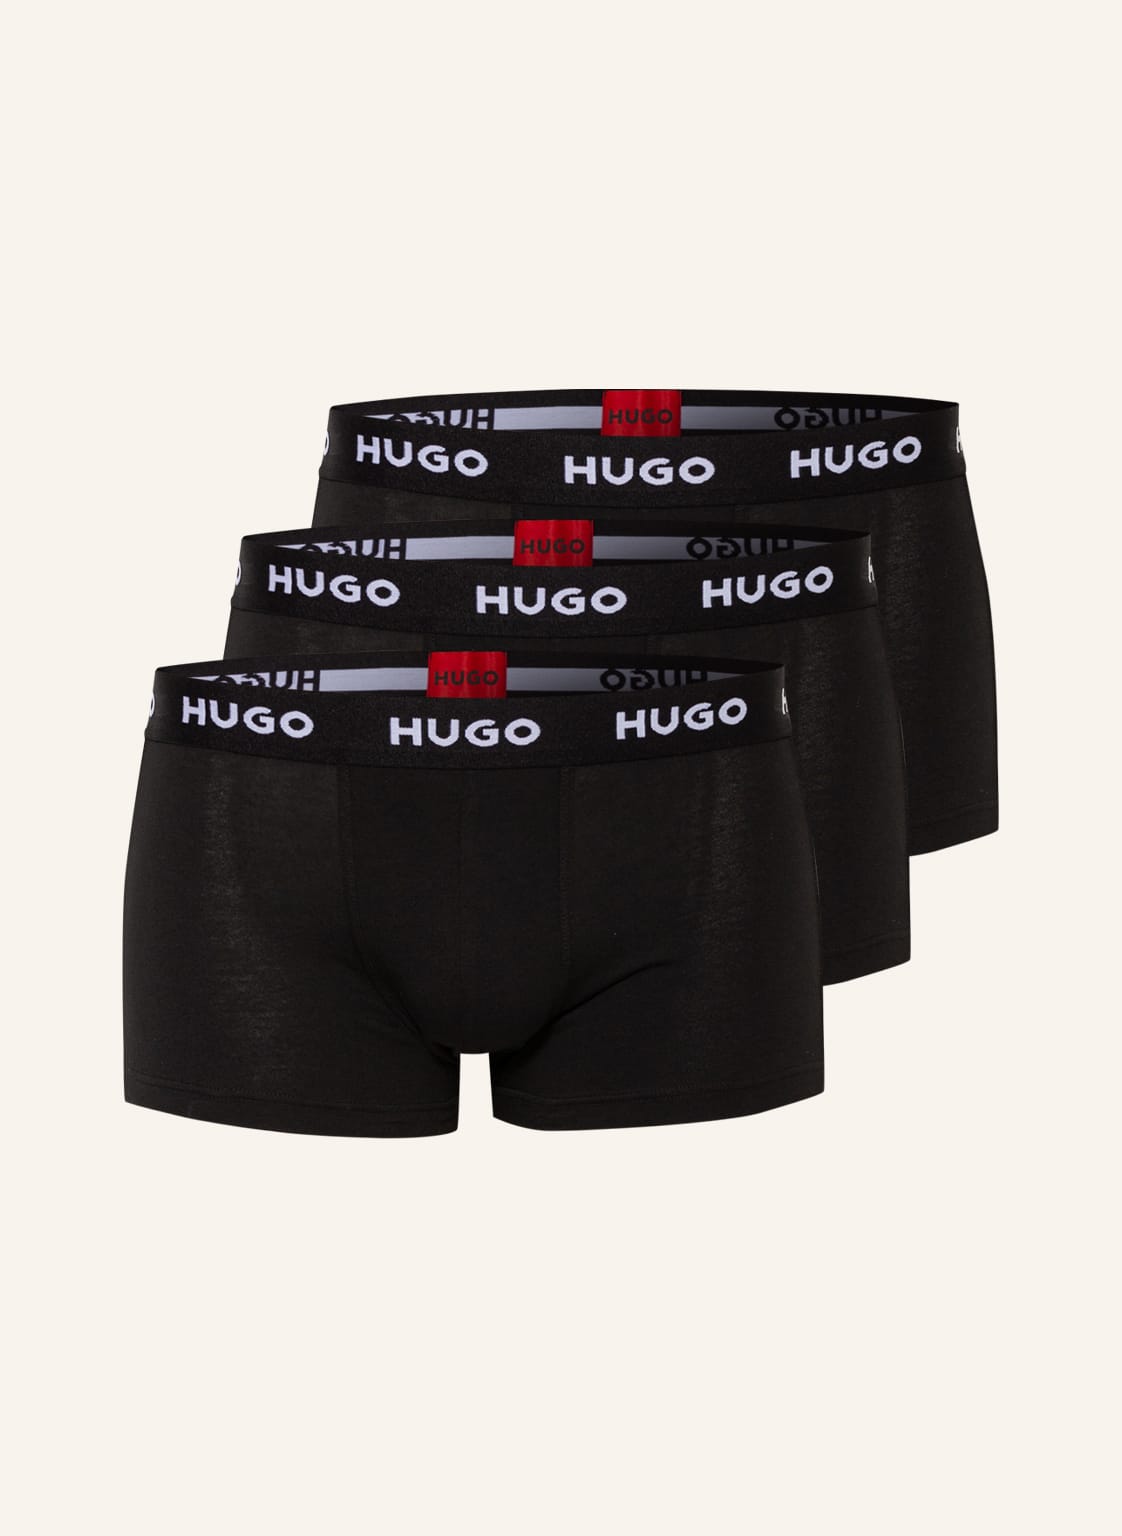 Hugo 3er-Pack Boxershorts schwarz von HUGO